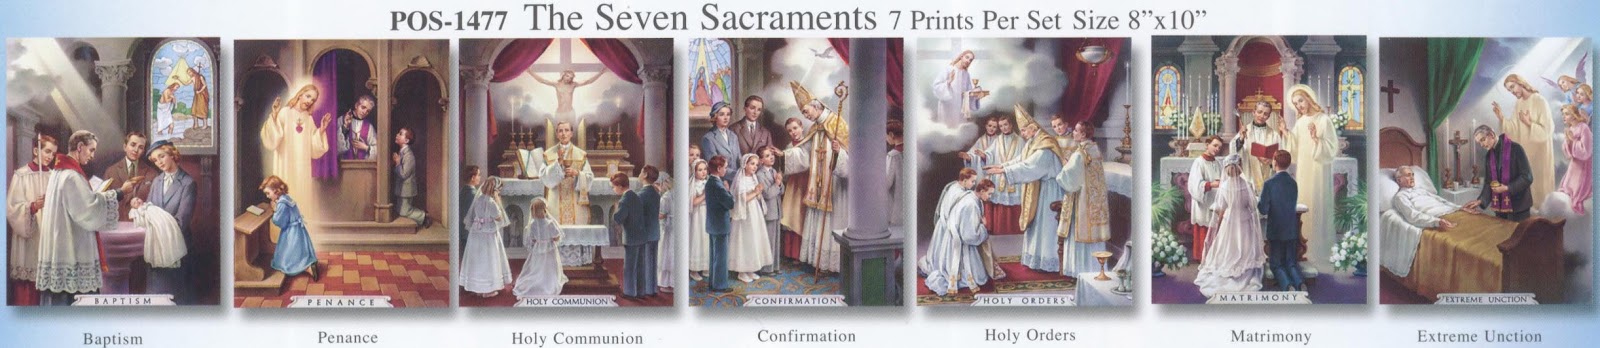 Describing the religious symbolism of the sacrament according to the catholics